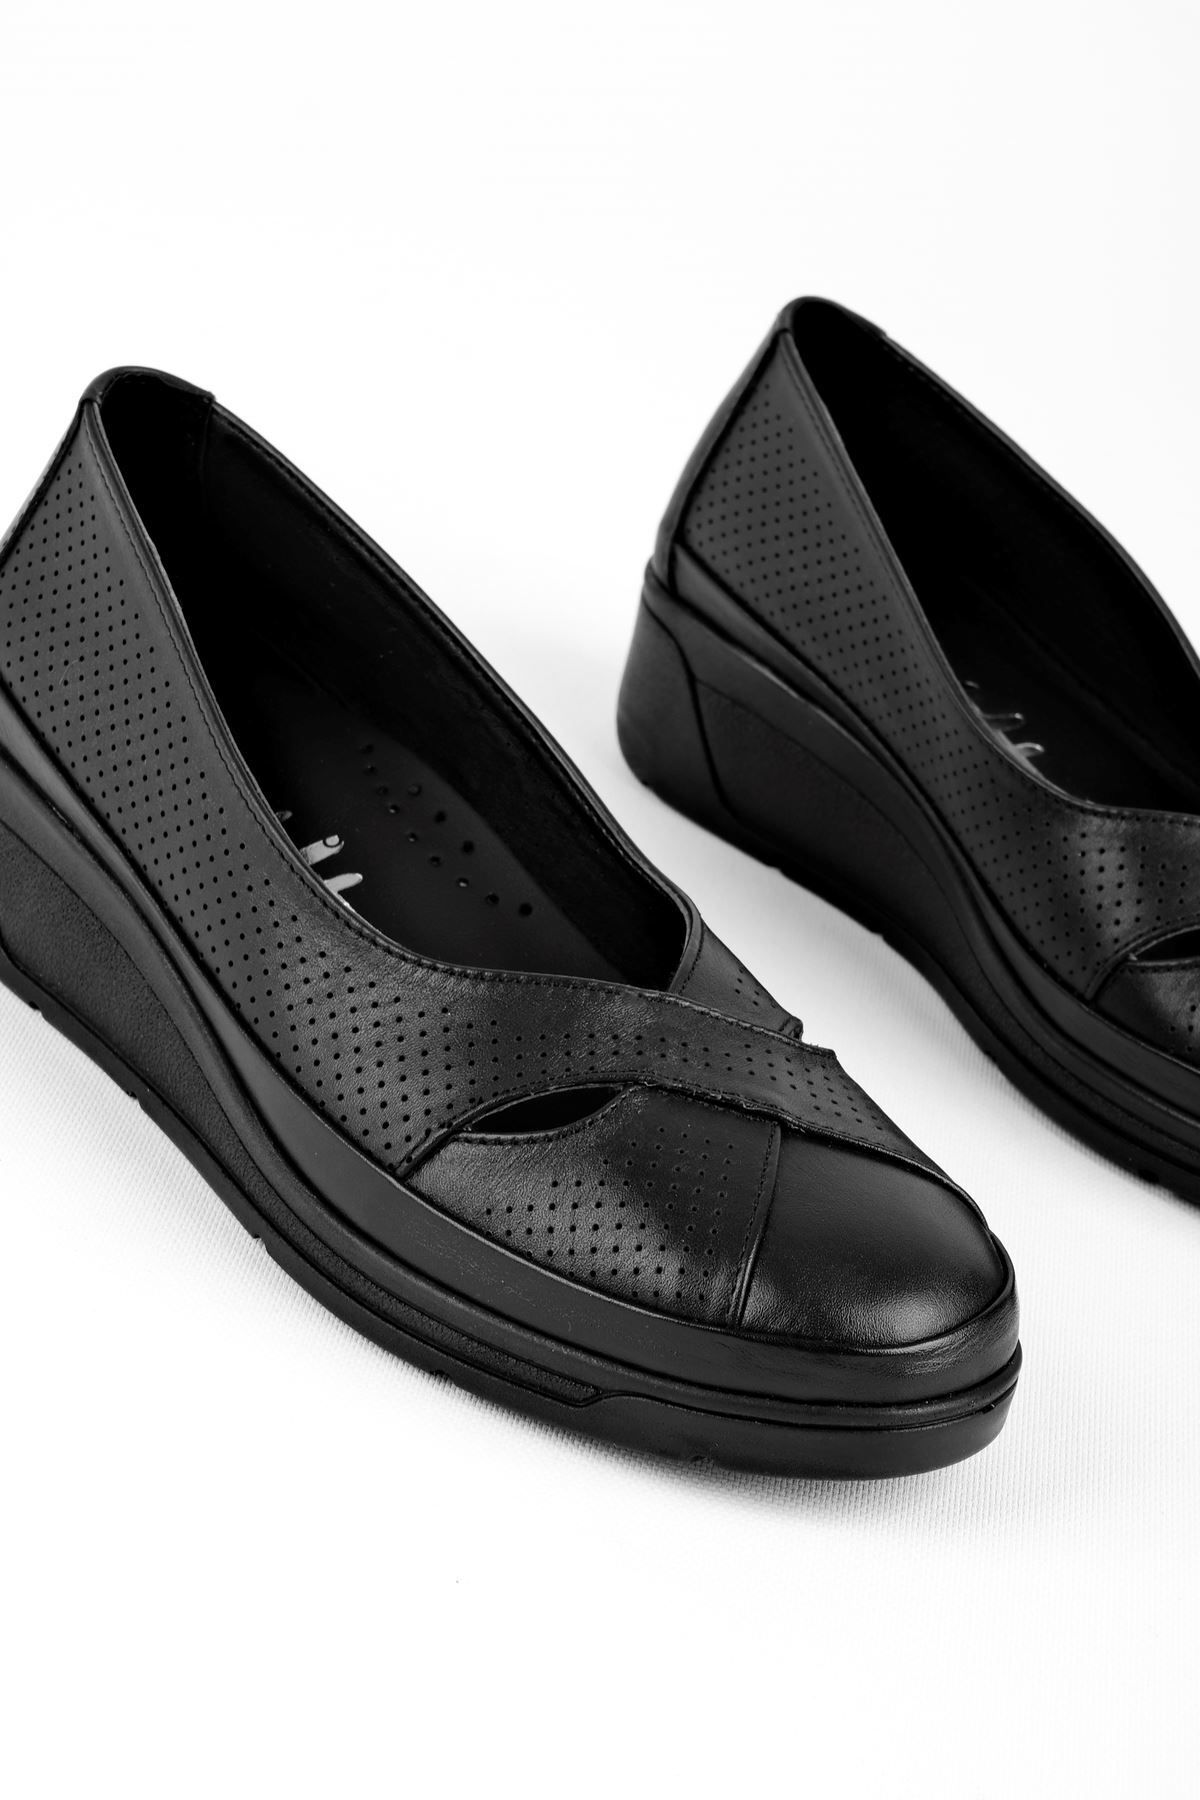 LAL SHOES & BAGS Lescel Kadın Hakiki Deri Çapraz Detaylı Günlük Ayakkabı-siyah